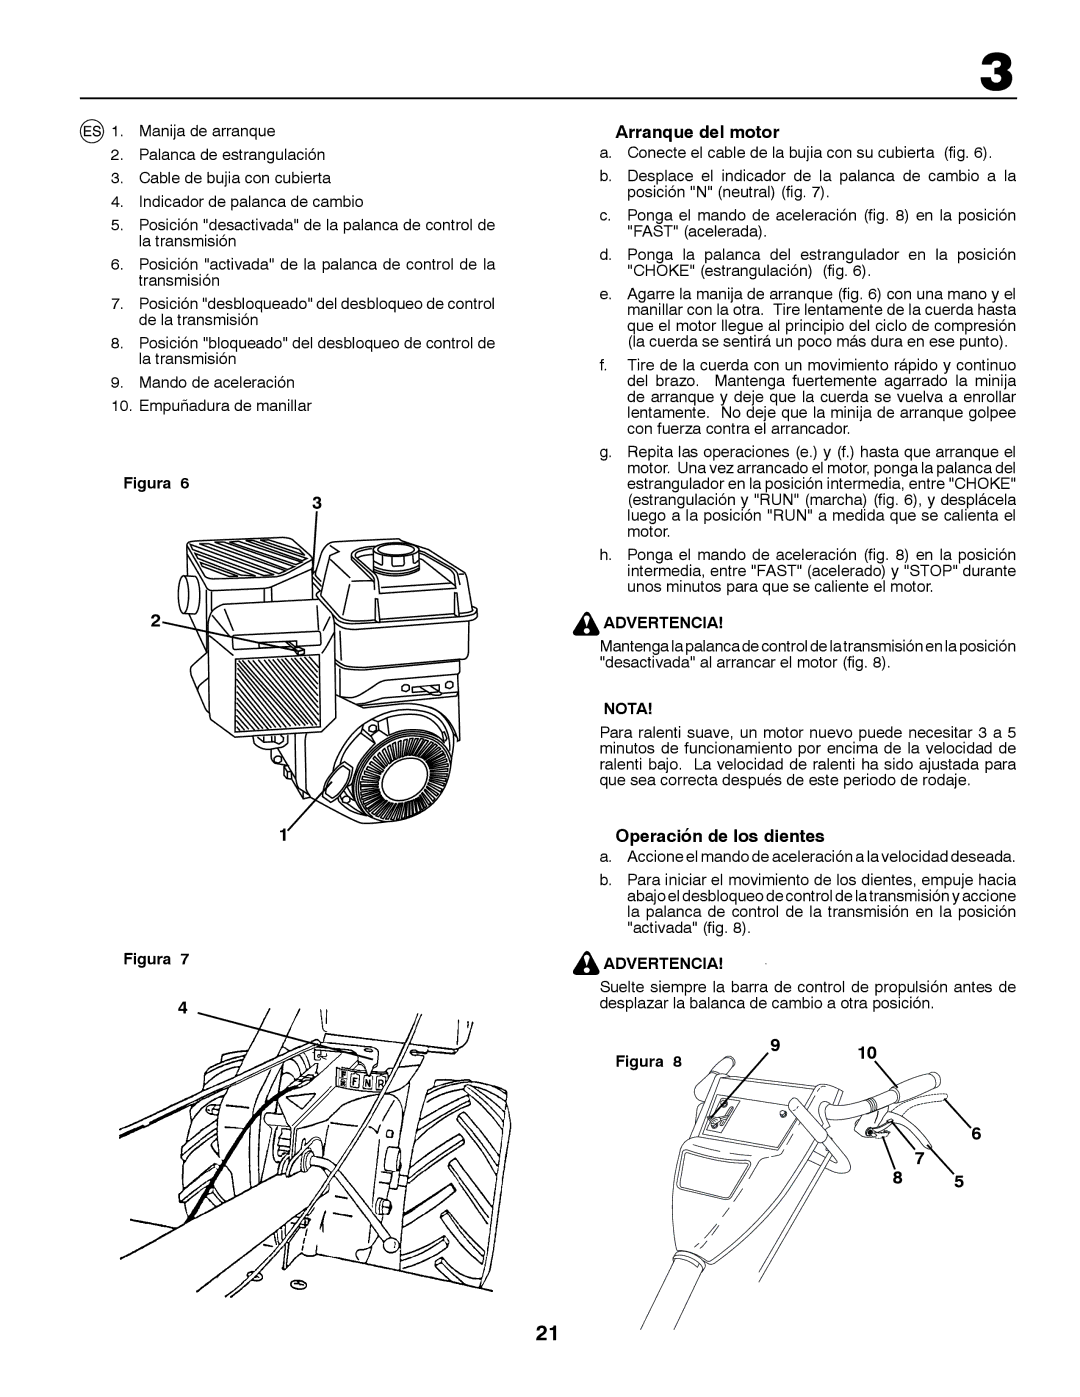 McCulloch MRT6 instruction manual Arranque del motor, Operación de los dientes, Advertencia 